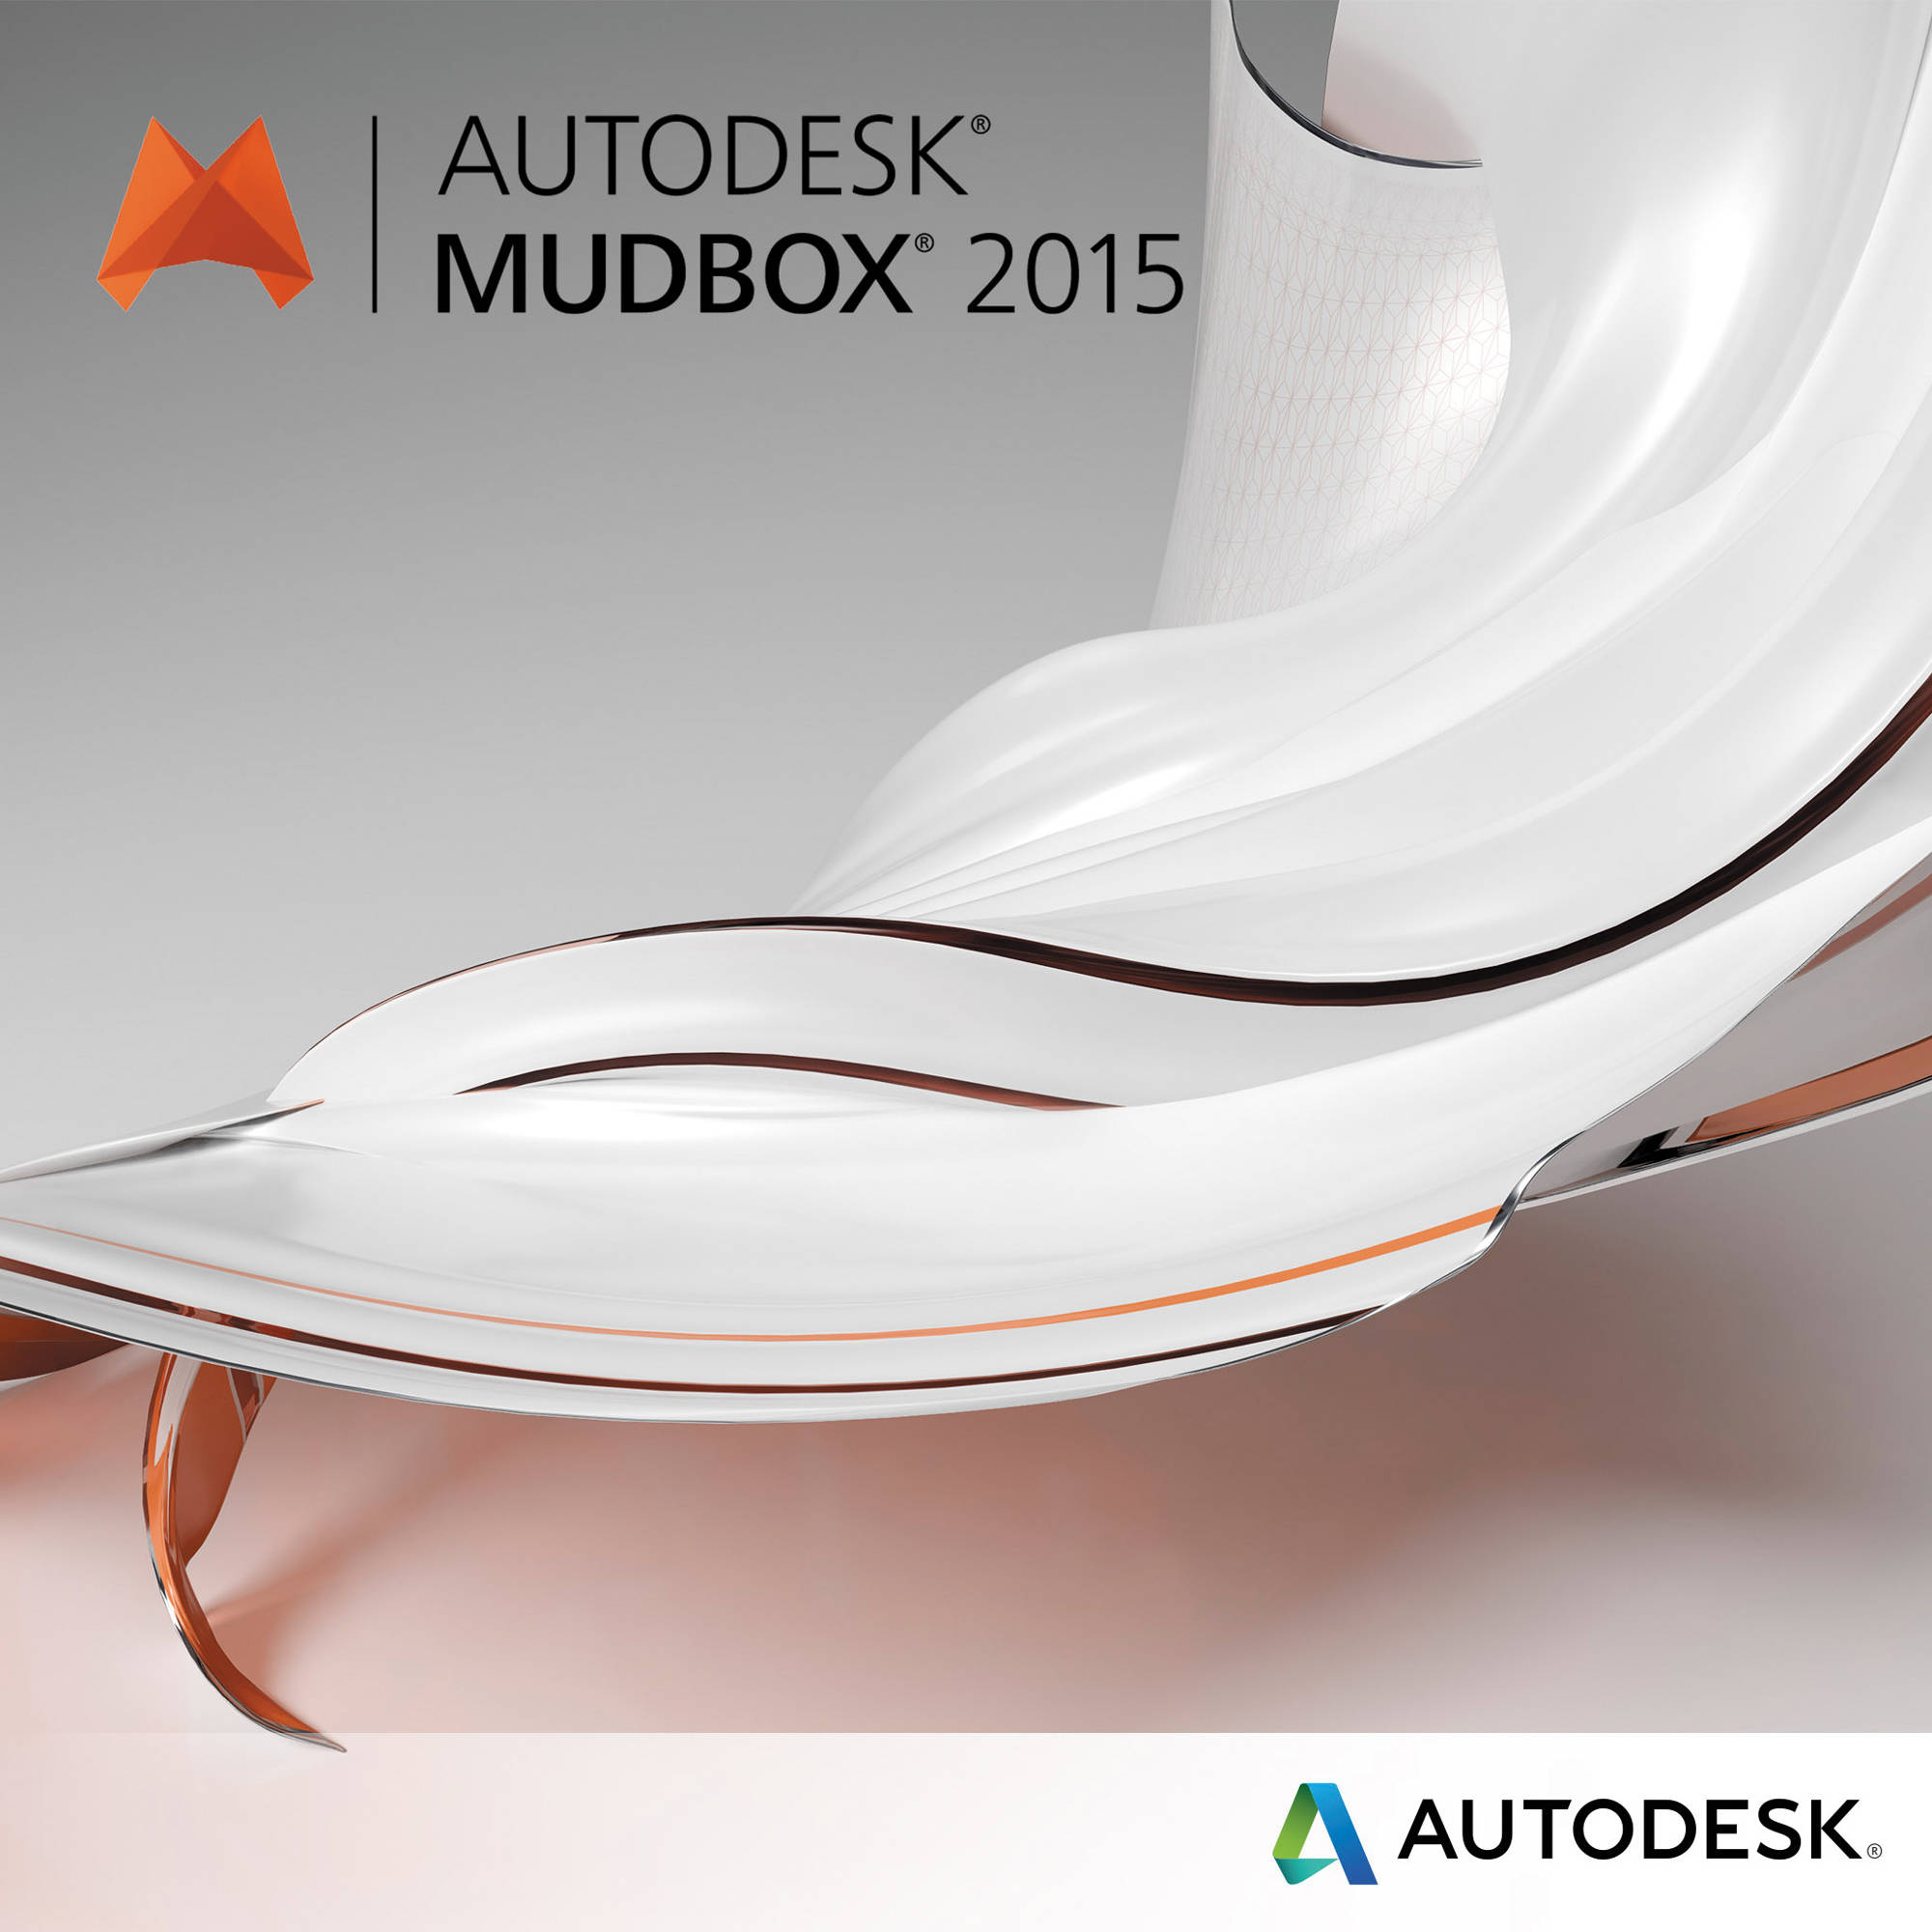 Autodesk mudbox student download